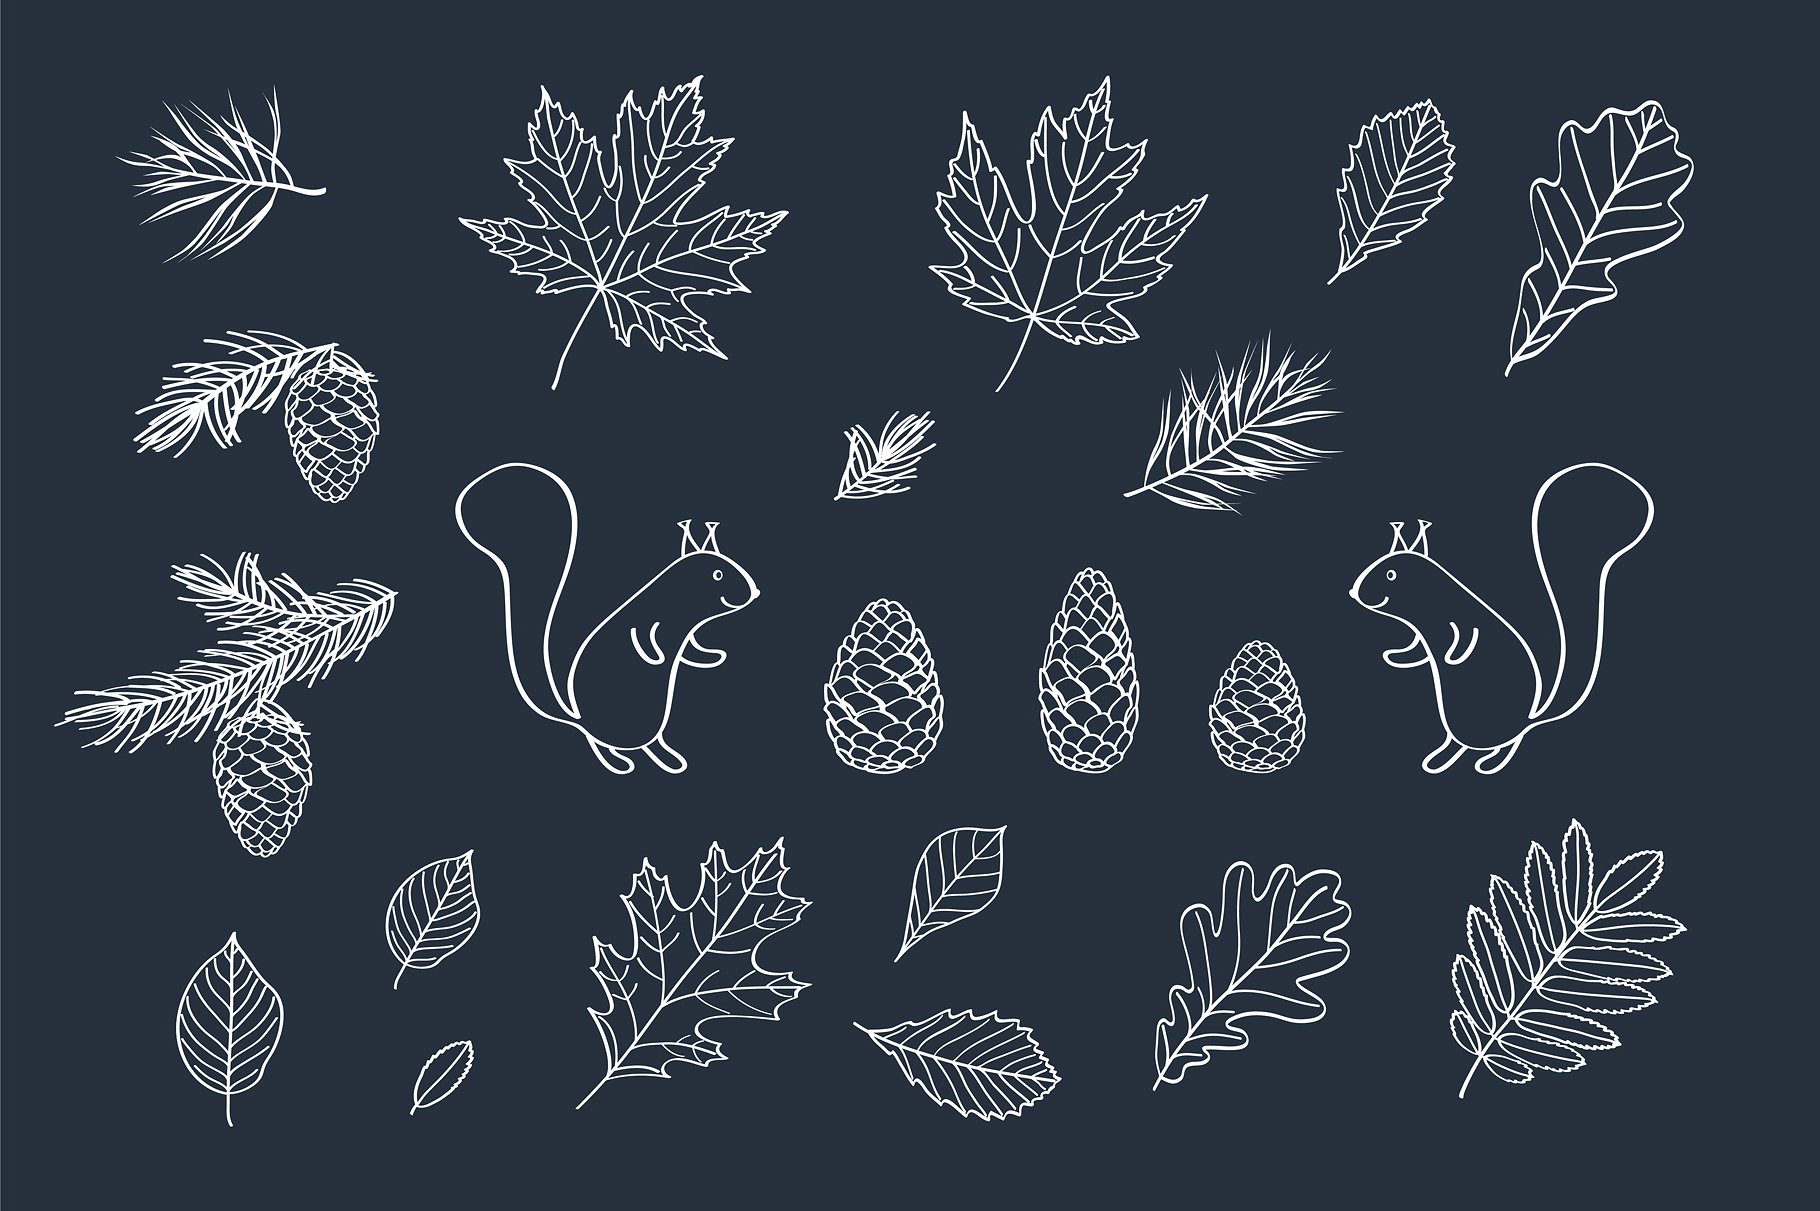 多款手绘叶子元素图案合集 Hand Drawn Leaves Of Different Trees插图4